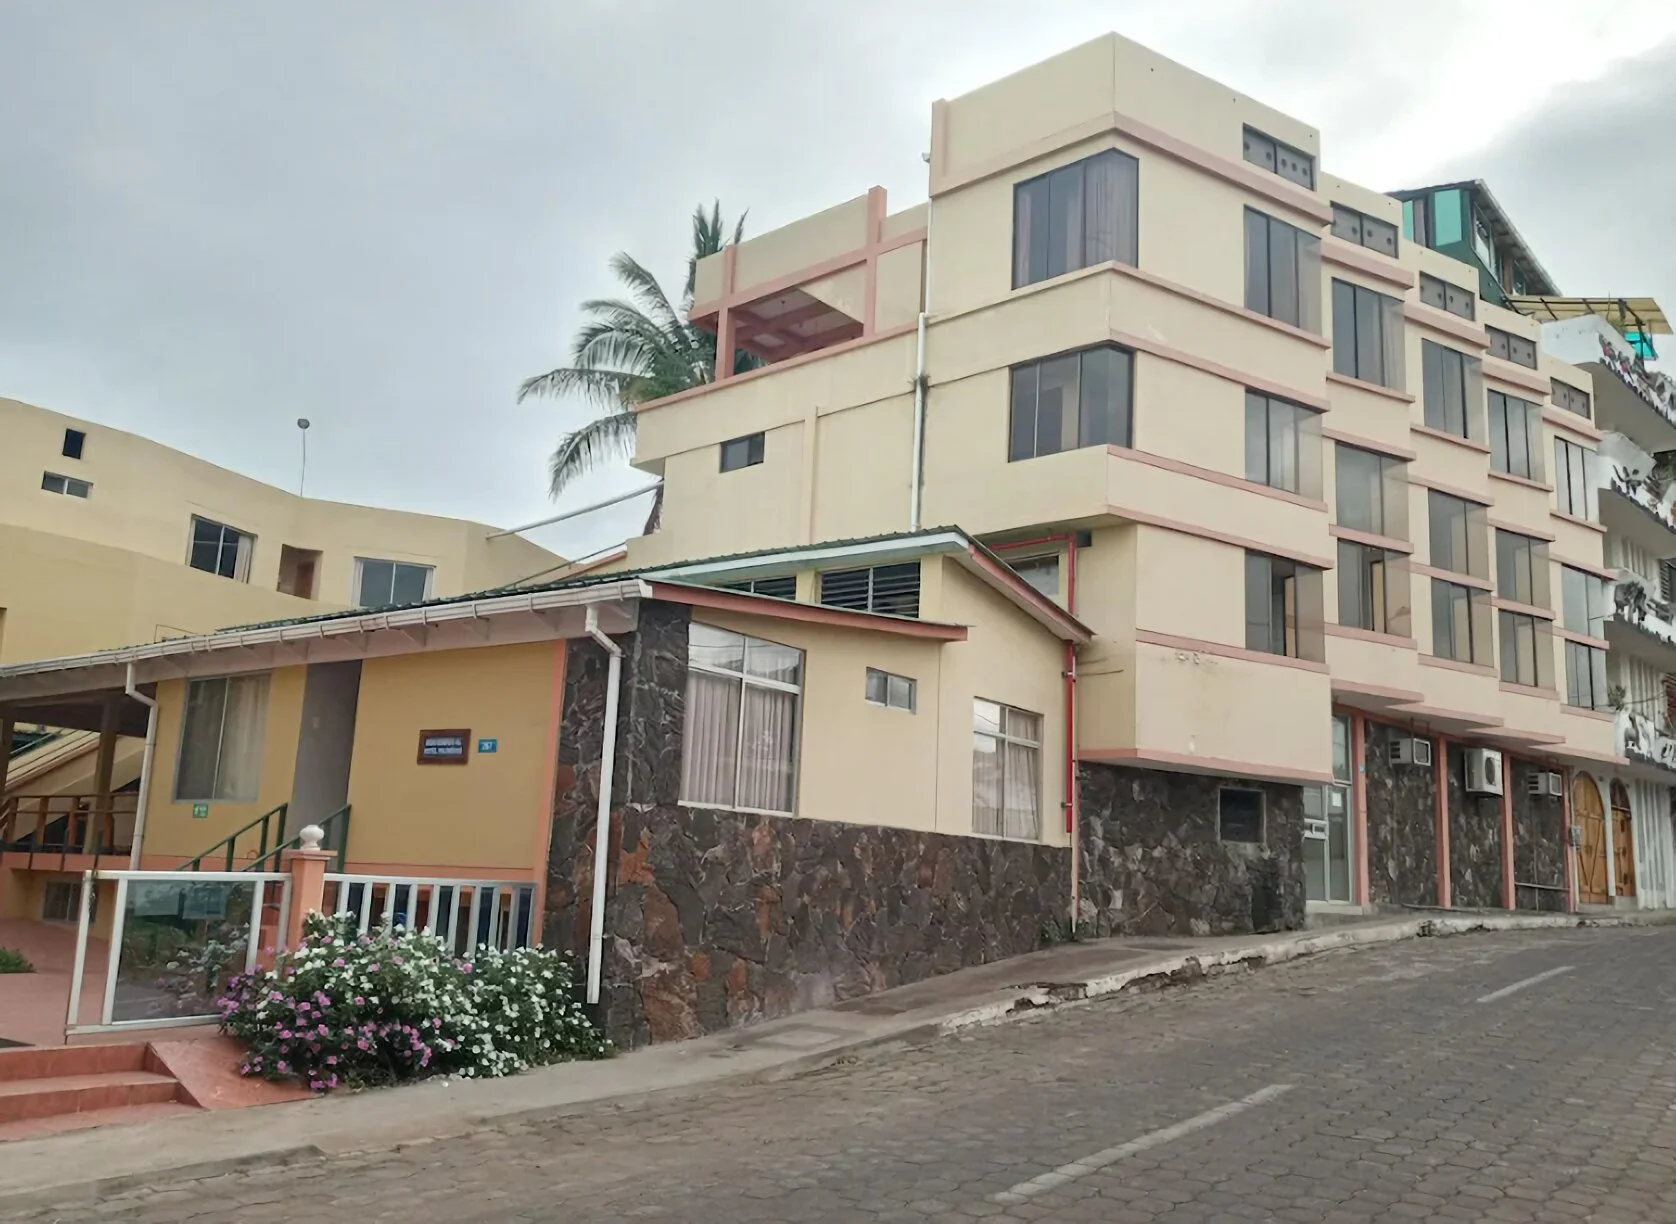 Hoteles-hotel-palm-garden-galapagos-13760